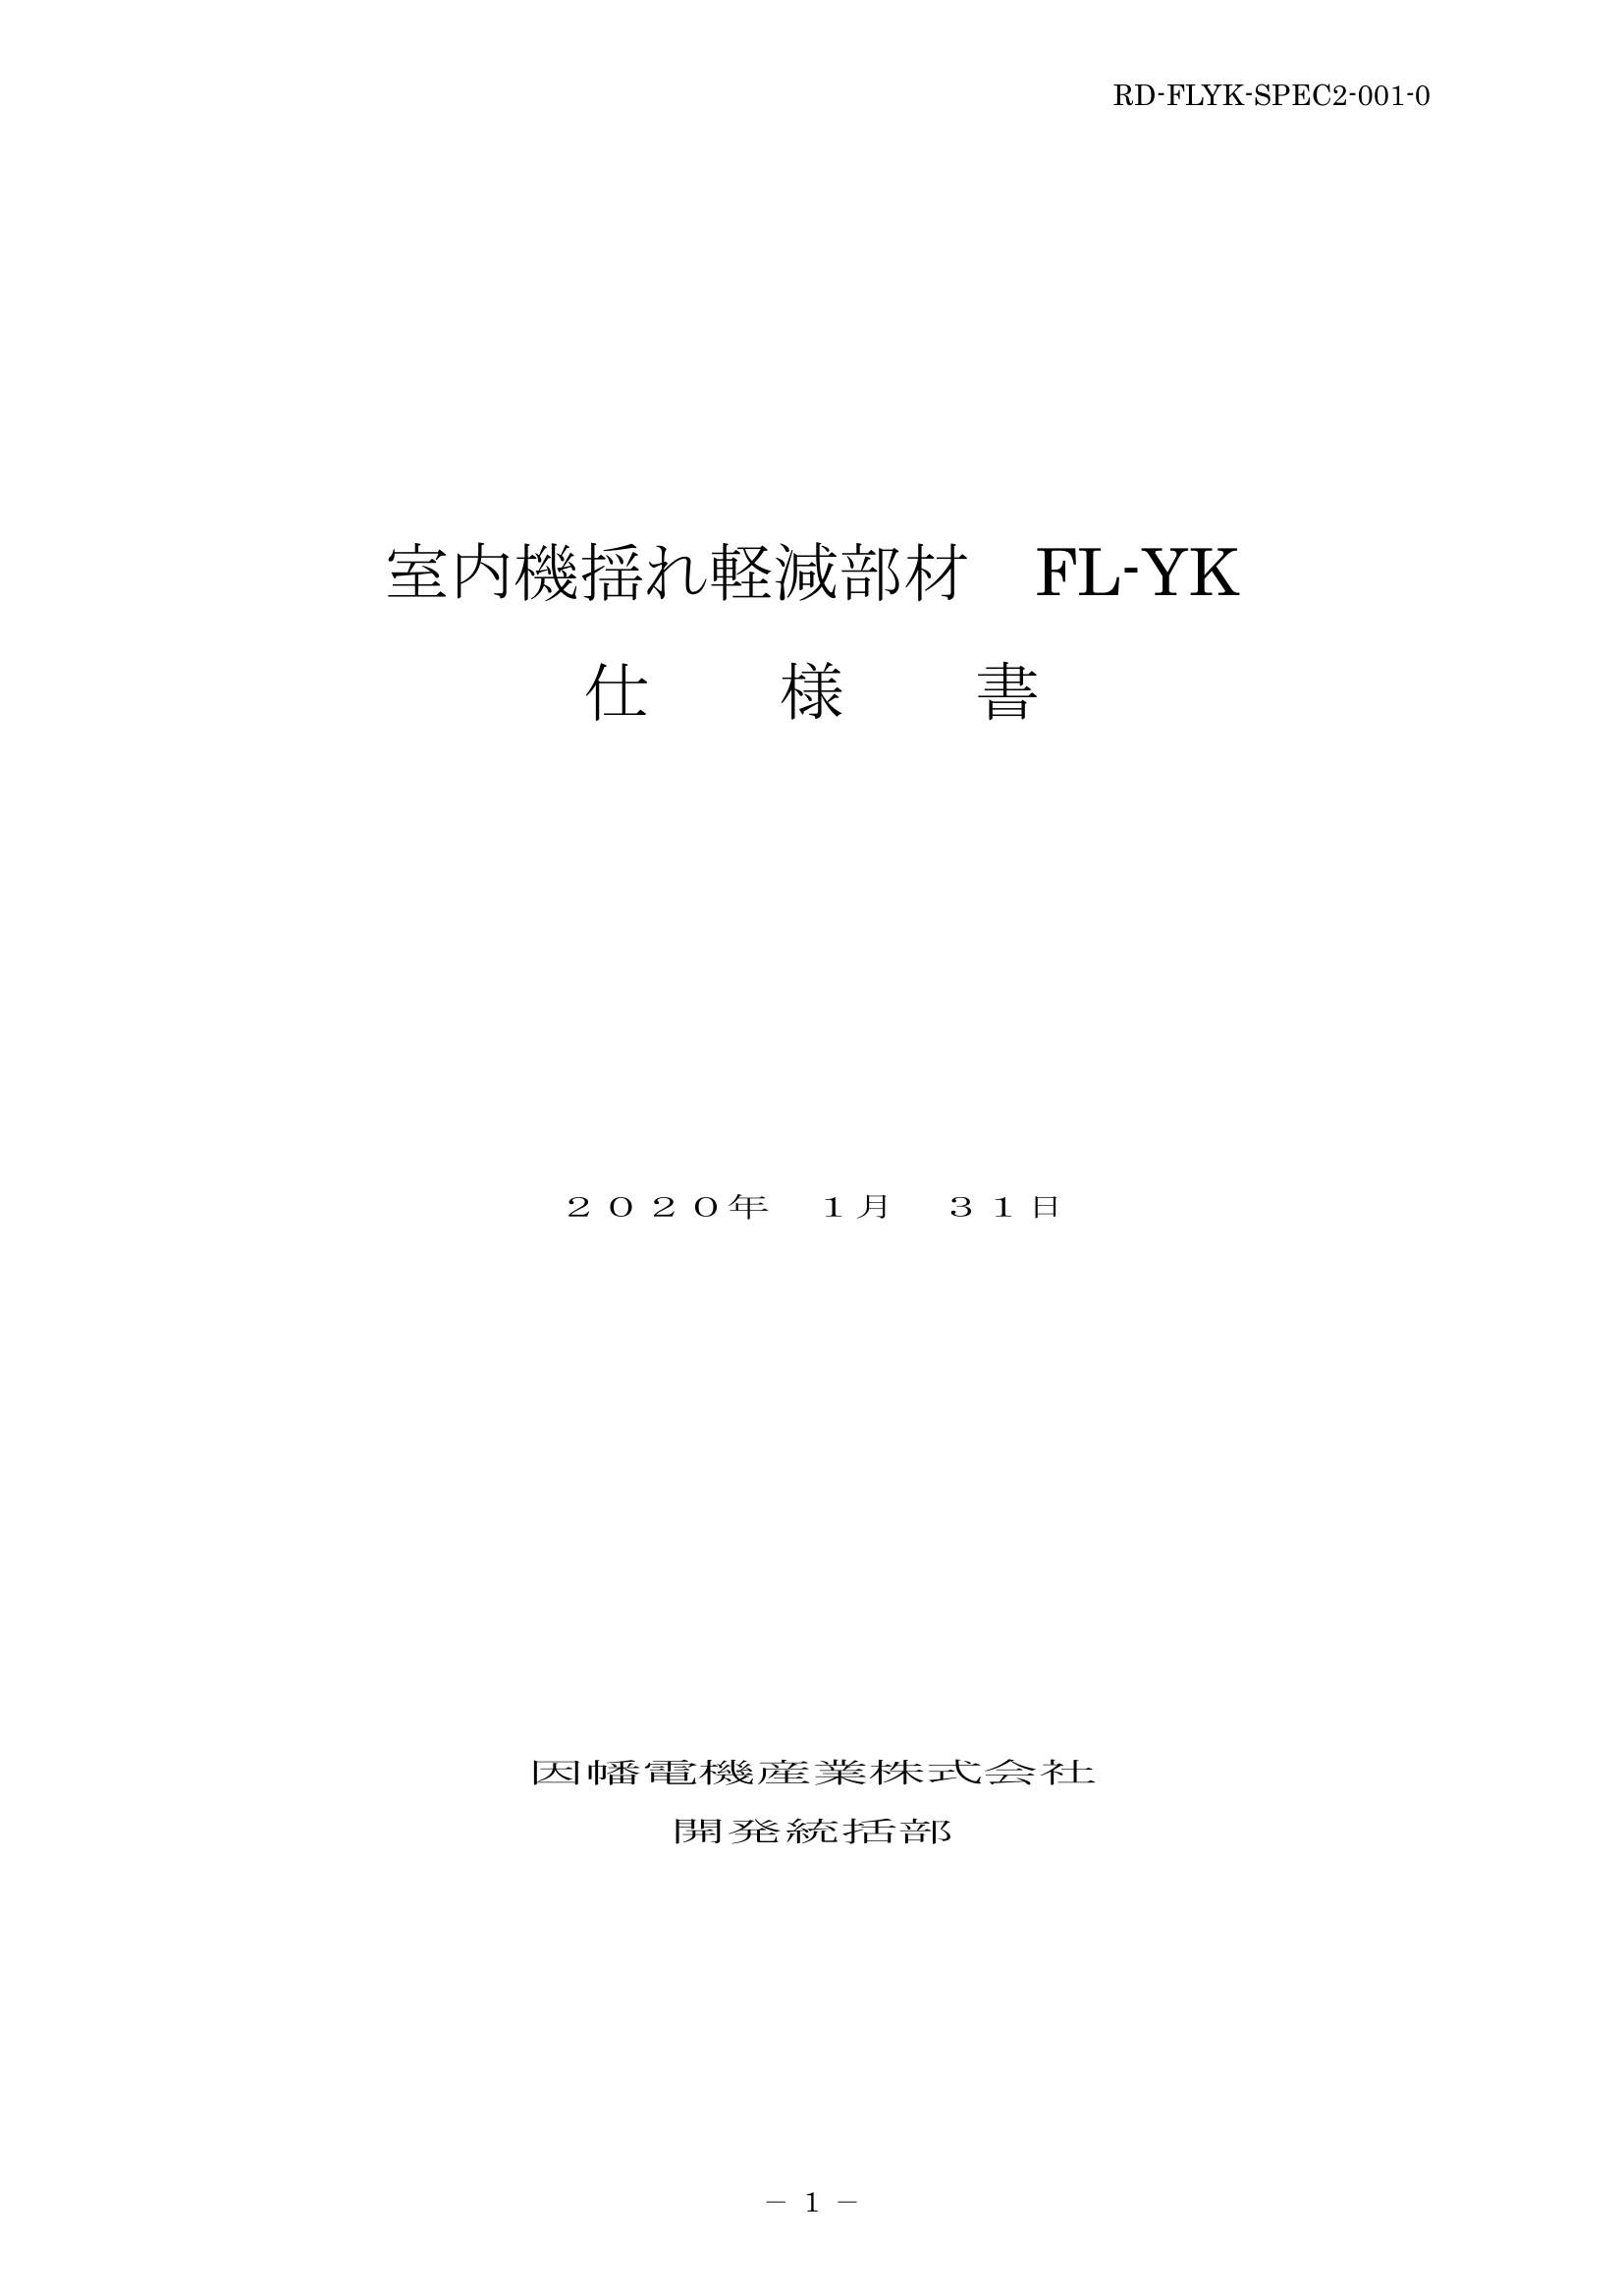 FL-YK_仕様書_20200131.pdf